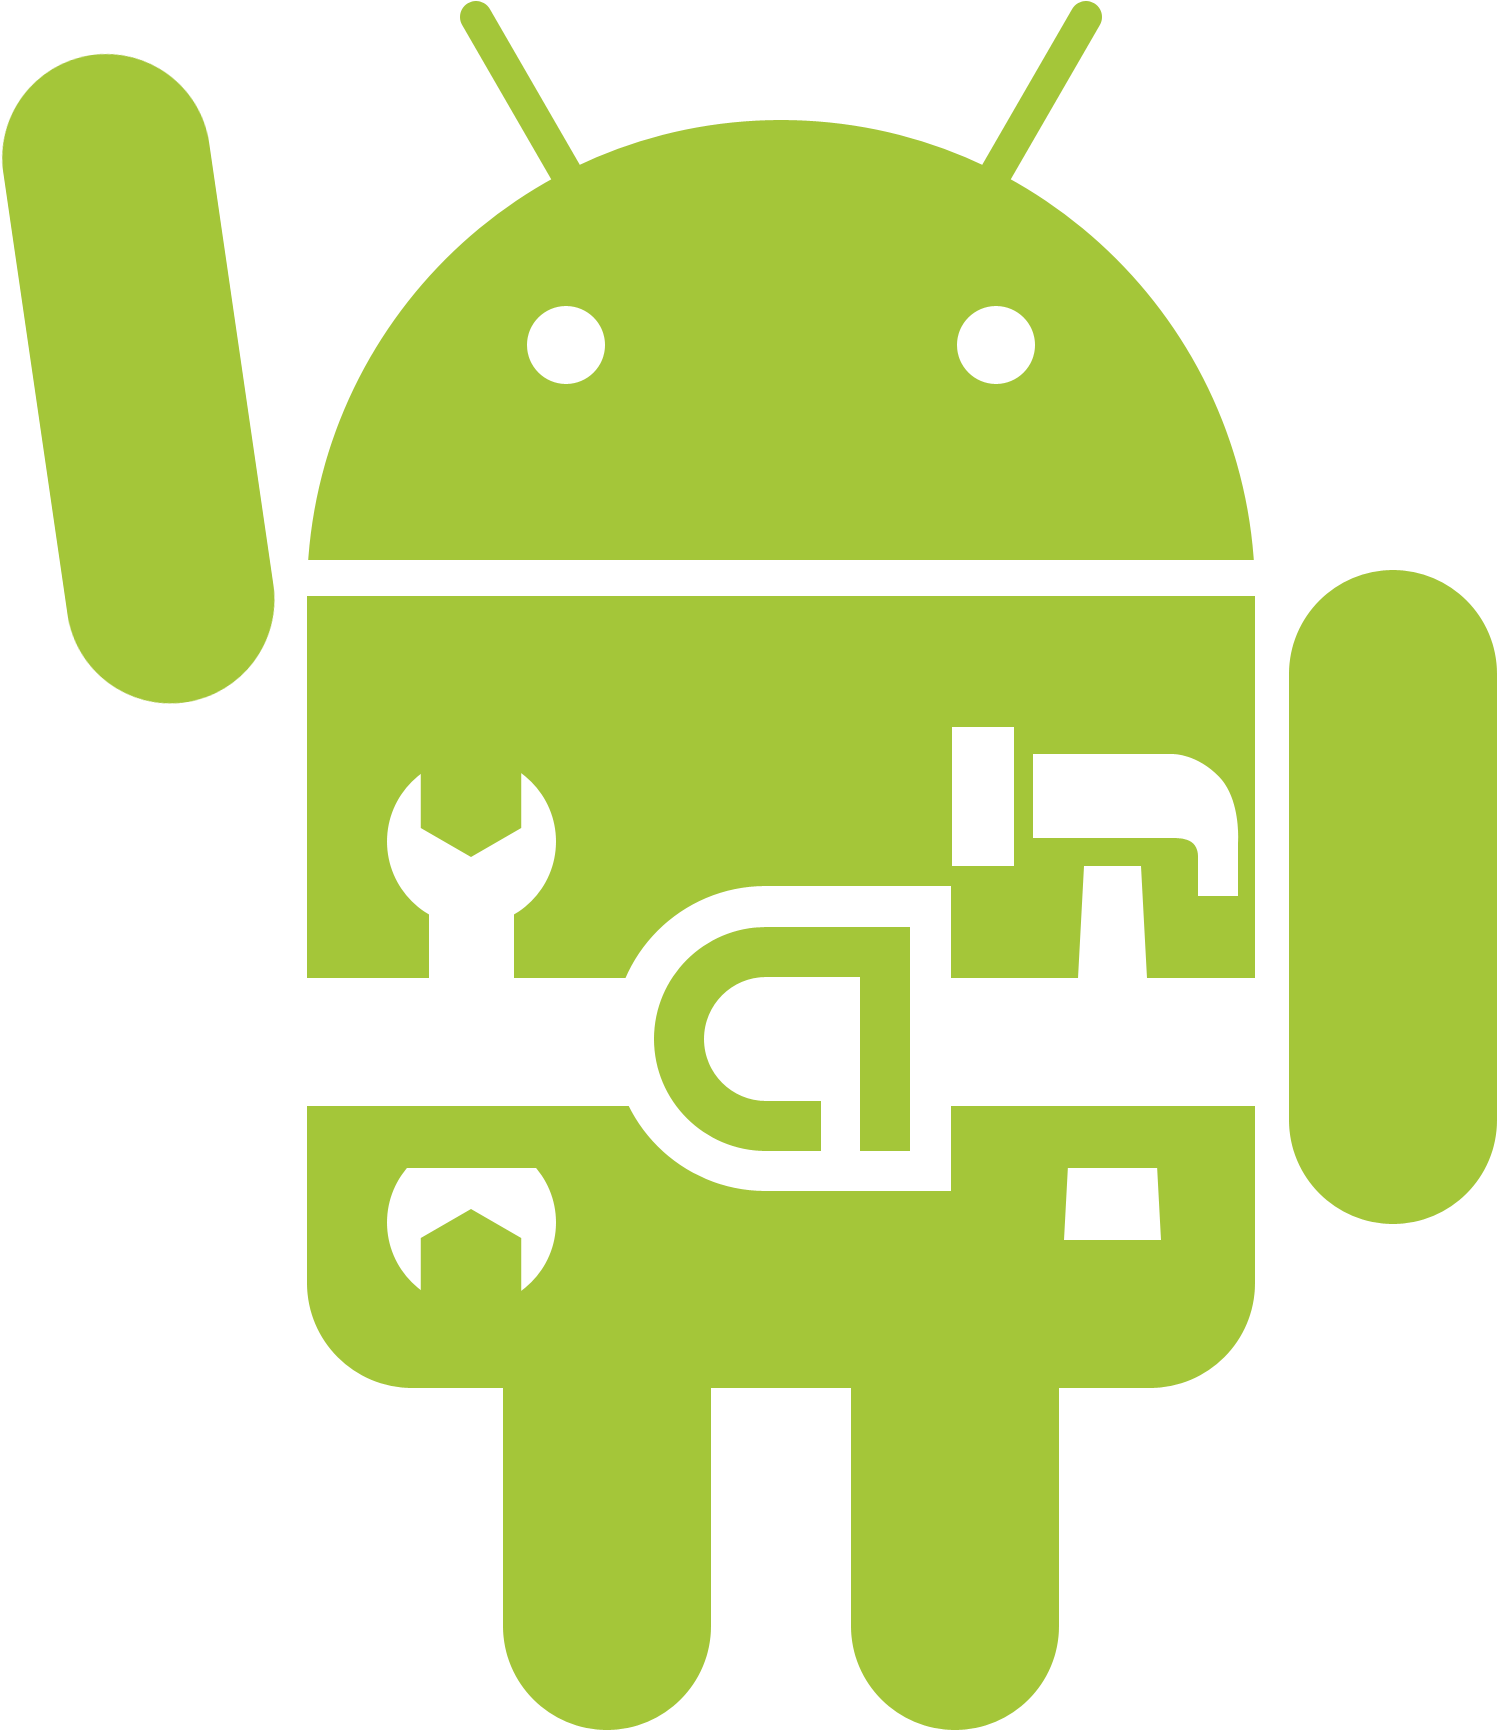 Андроид apk full. Эмблема андроид. Иконка Android. Андроид без фона. Значок Android без фона.